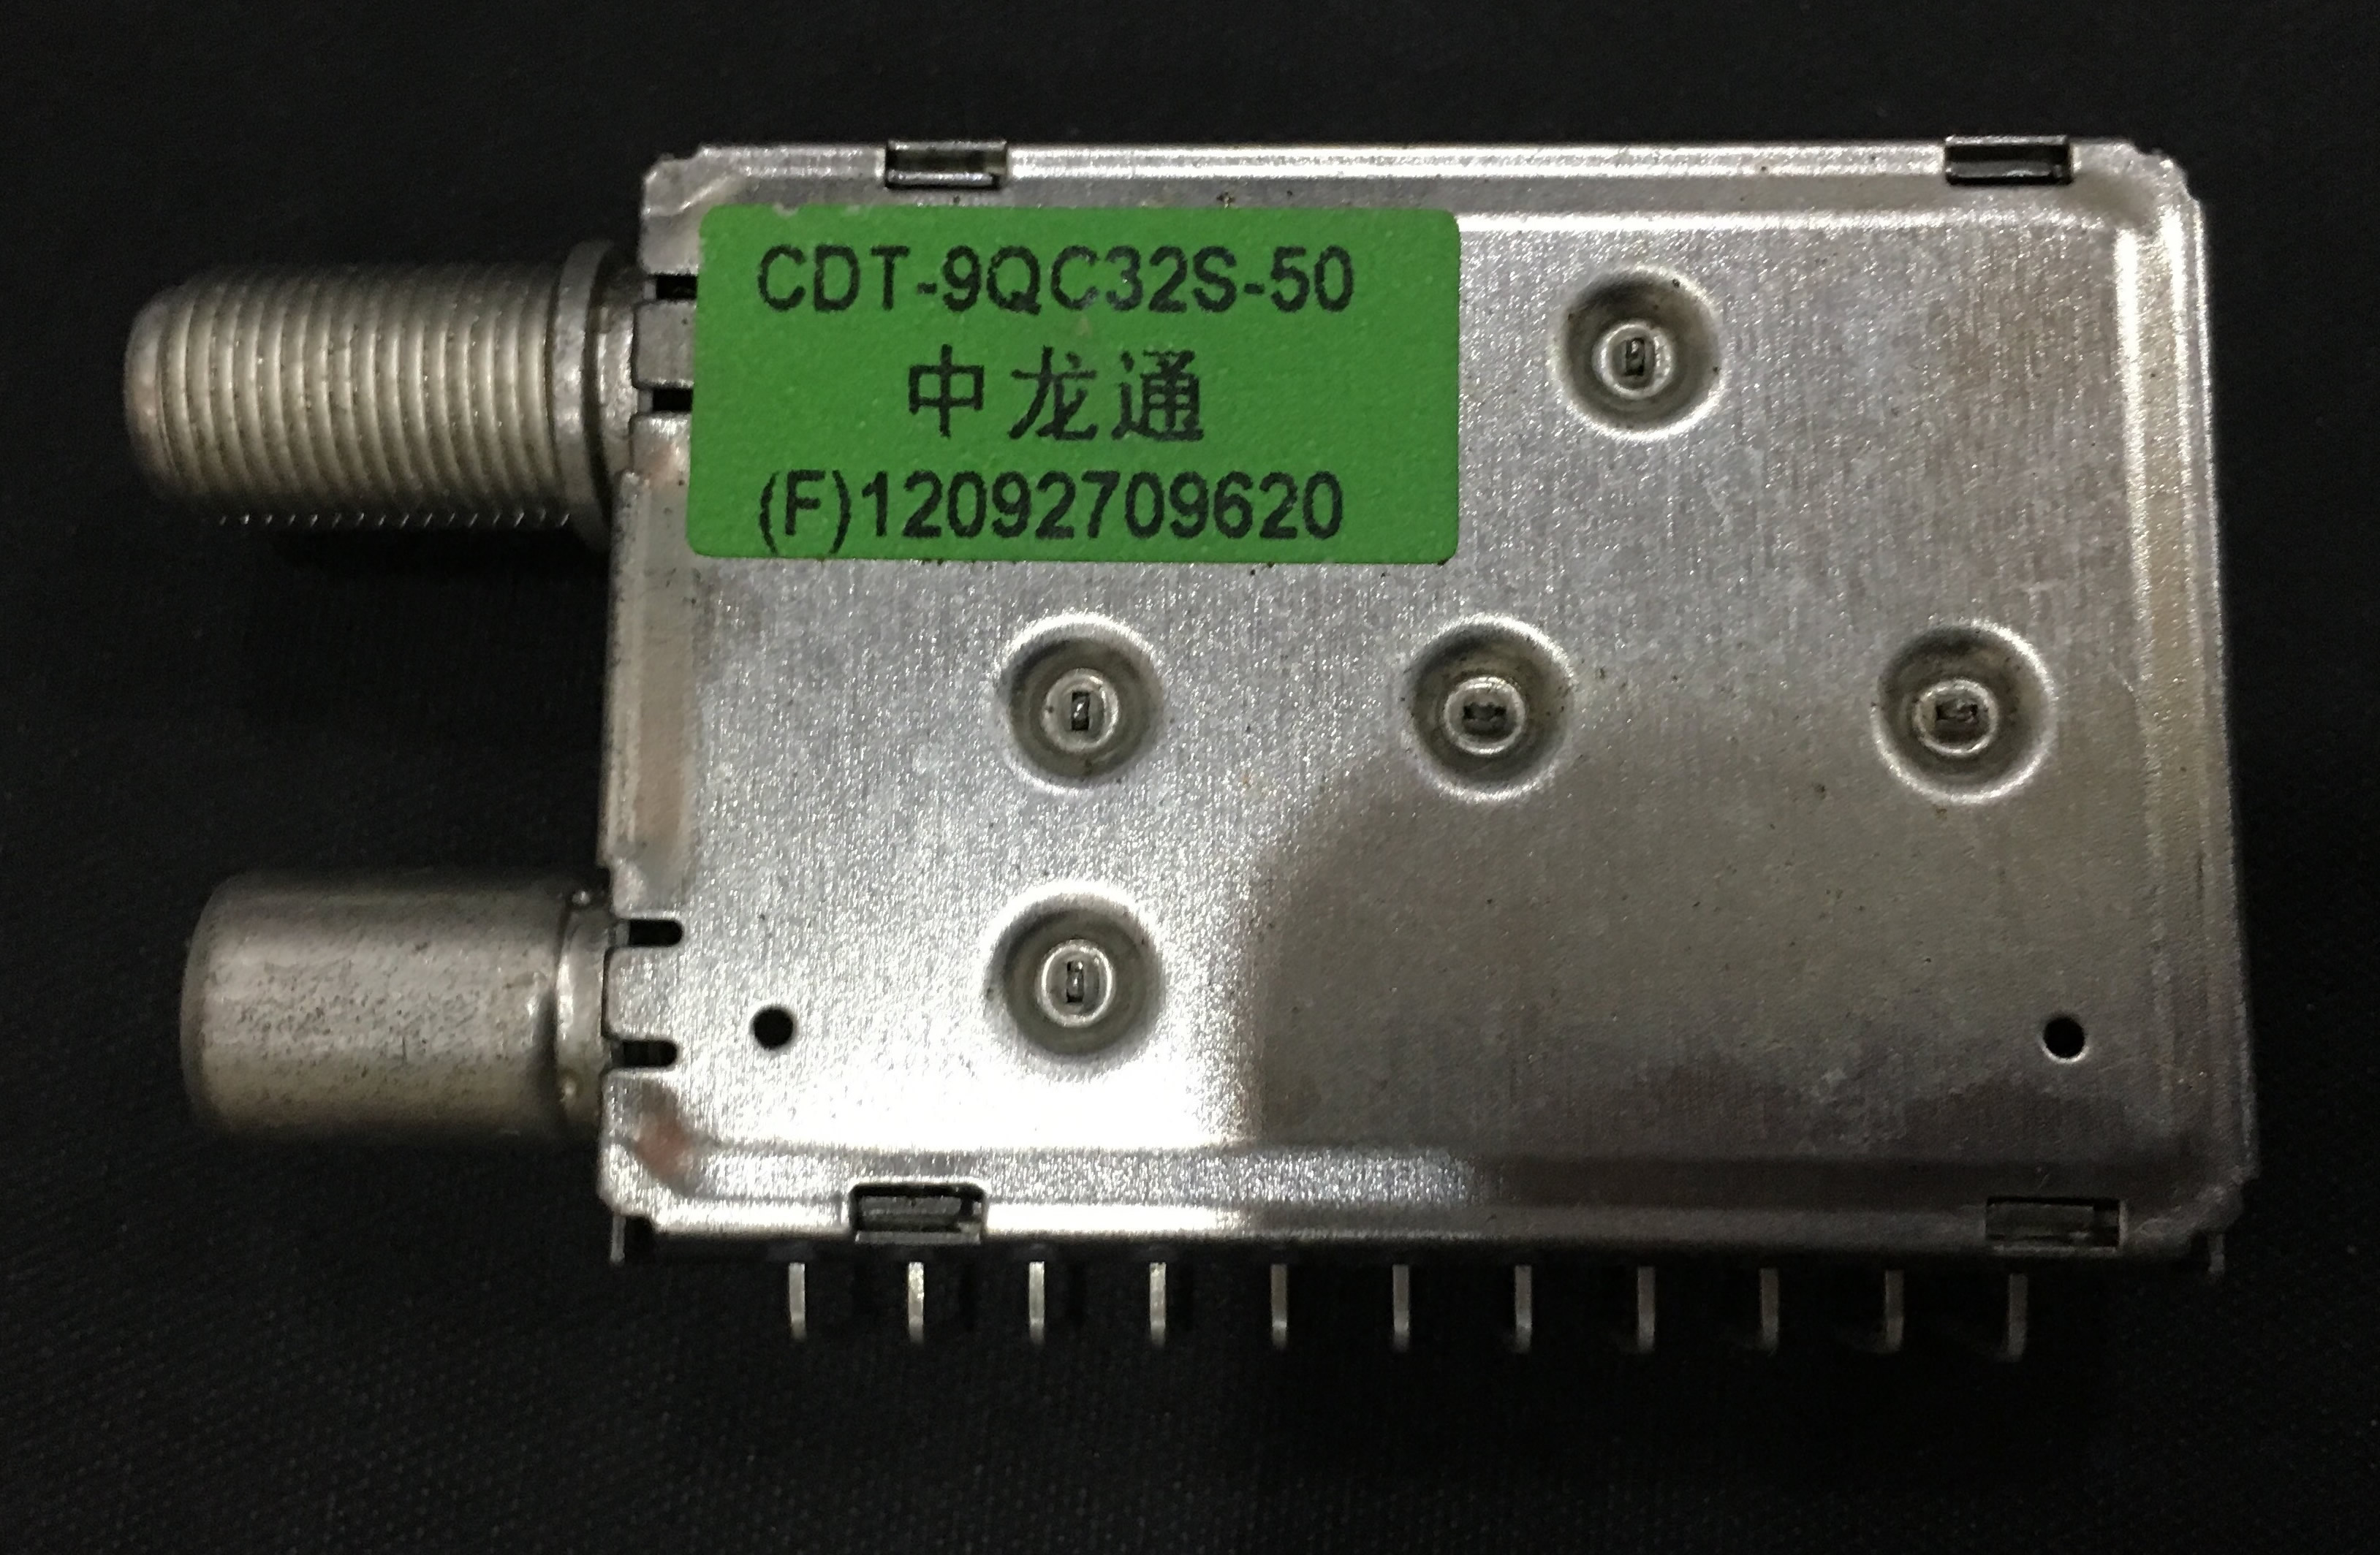 CDT-9QC32S-50 tuner